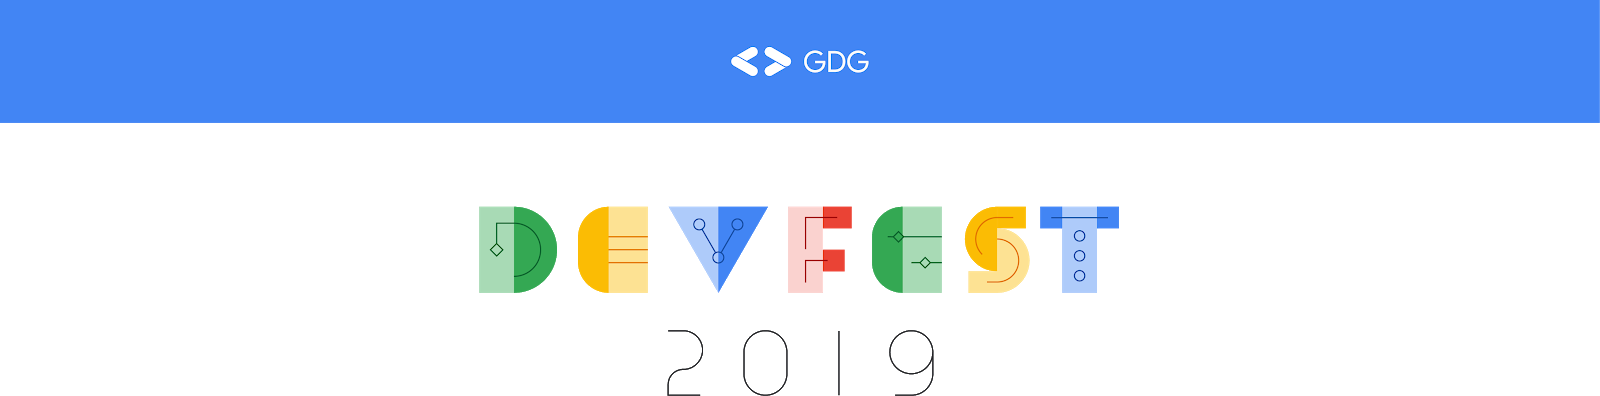 GDG DevFest banner